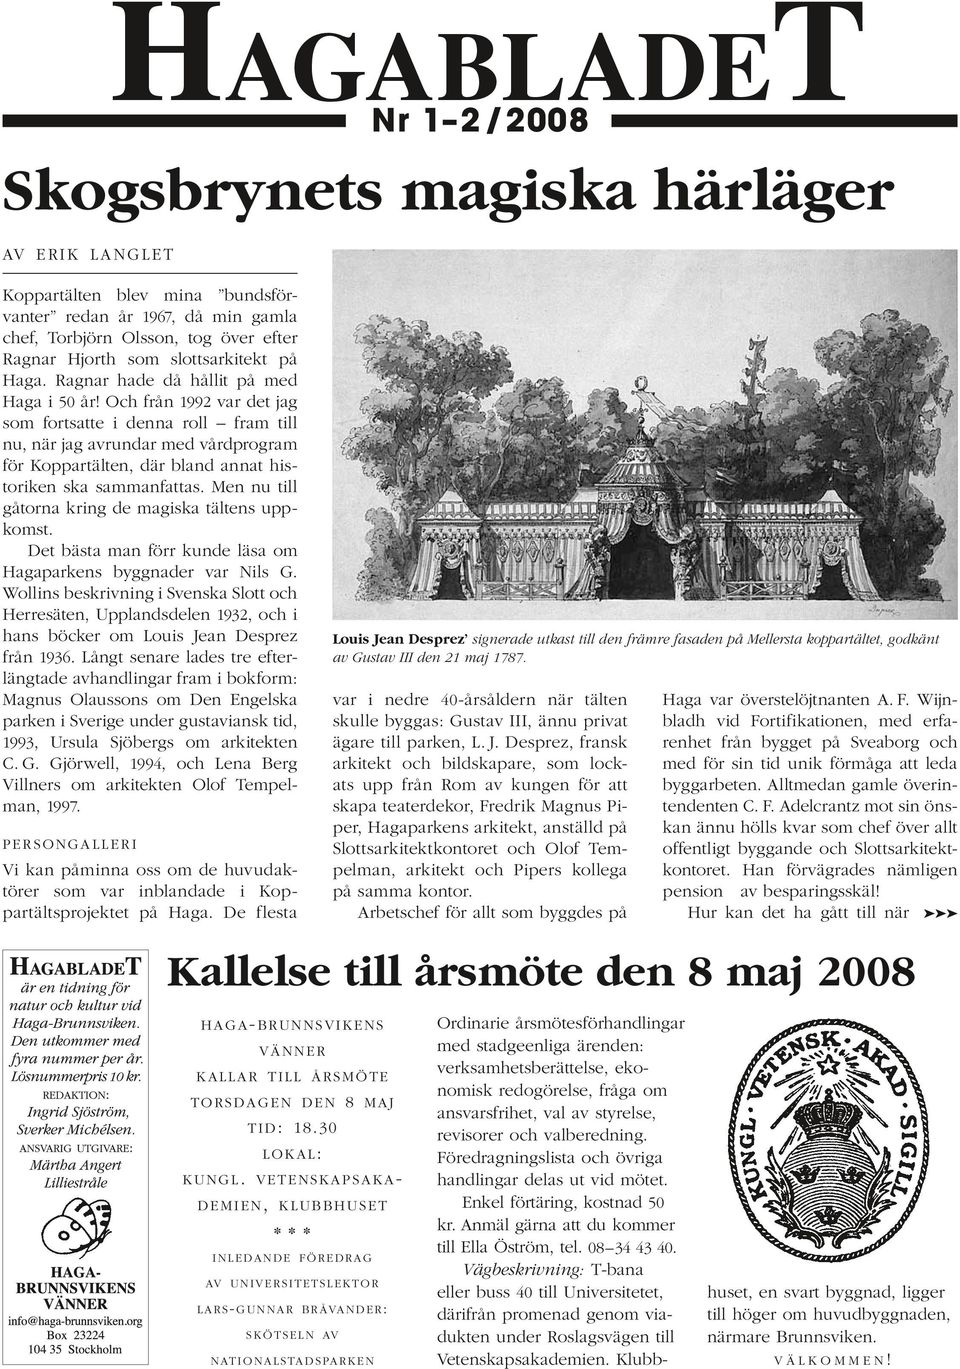 Och från 1992 var det jag som fortsatte i denna roll fram till nu, när jag avrundar med vårdprogram för Koppartälten, där bland annat historiken ska sammanfattas.